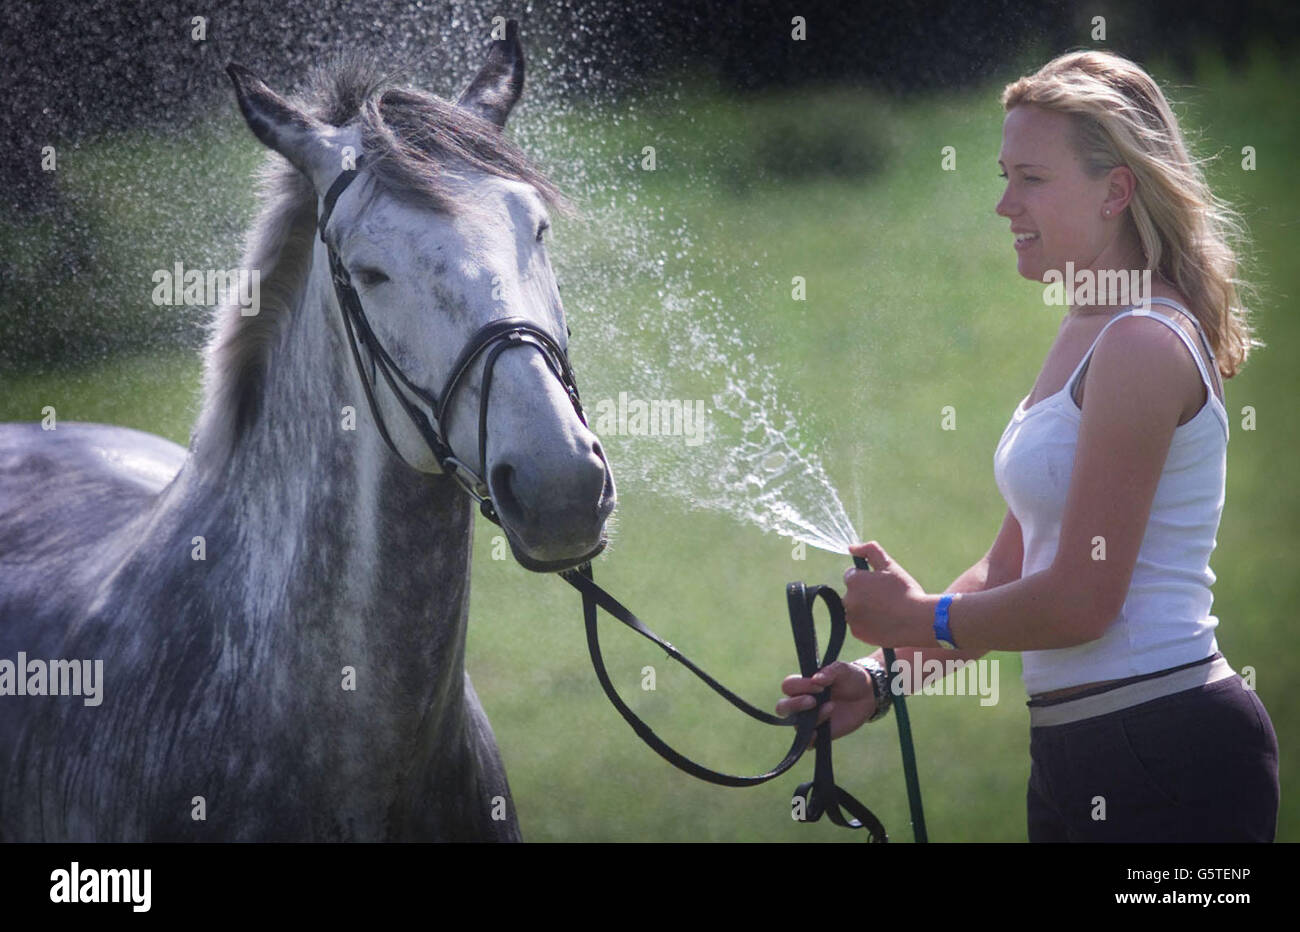 Dressurreiterin Jo Andrews (21) schmeiß ihr Pferd 'Blue' während der Royal Windsor Pferdeshow herunter, als die Temperaturen auf 25 Grad anstiegen. Jo reitet auf der Jubiläumsfeier "All the Queens Horses", die neben der Windsor Horse Show stattfindet. Stockfoto